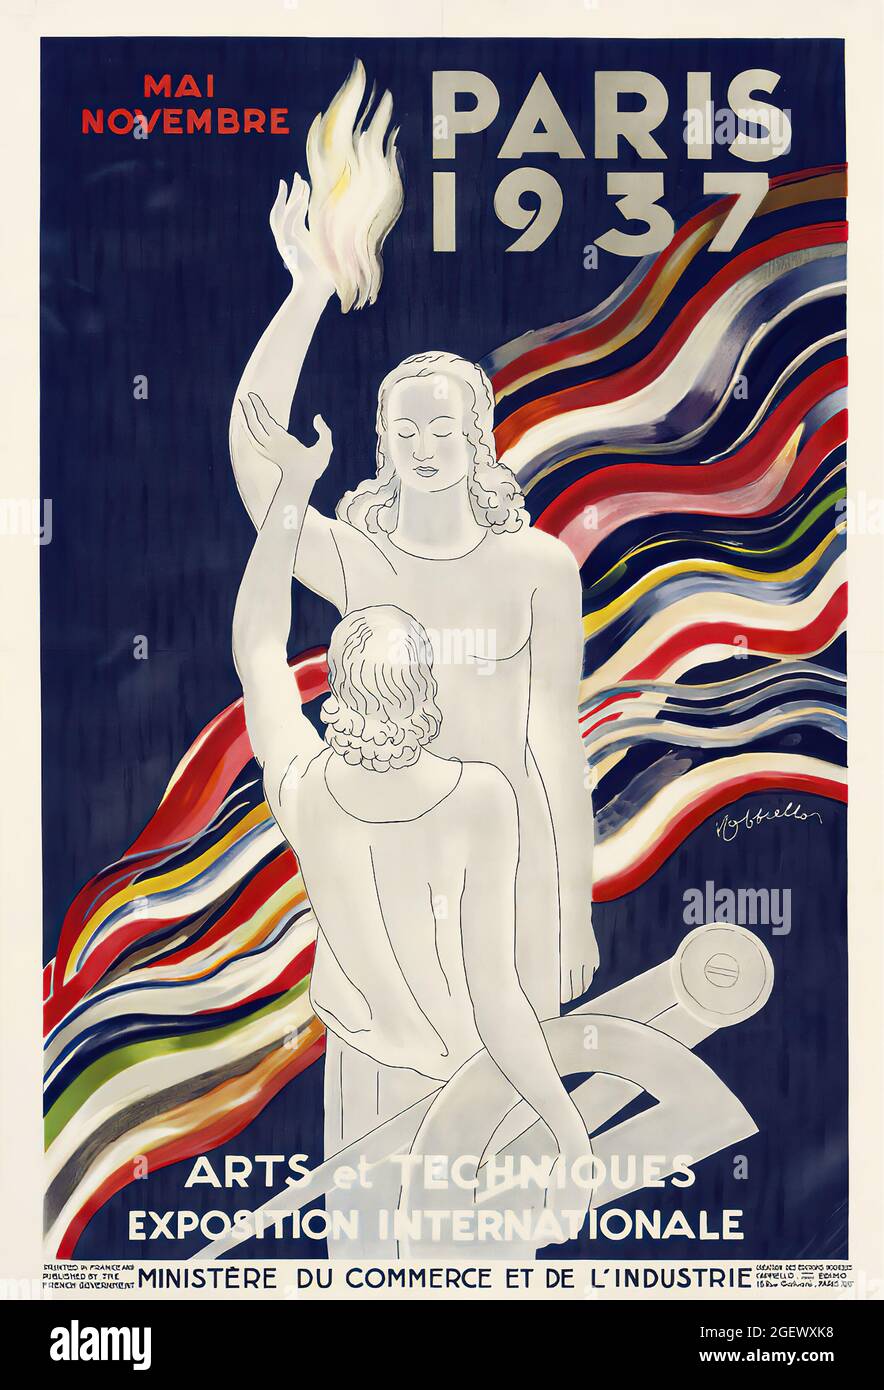 Leonetto Cappiello artwork. Art Nouveau. Vintage advertisement poster. Paris 1937. Paris Exposition Art and Technology. Stock Photo